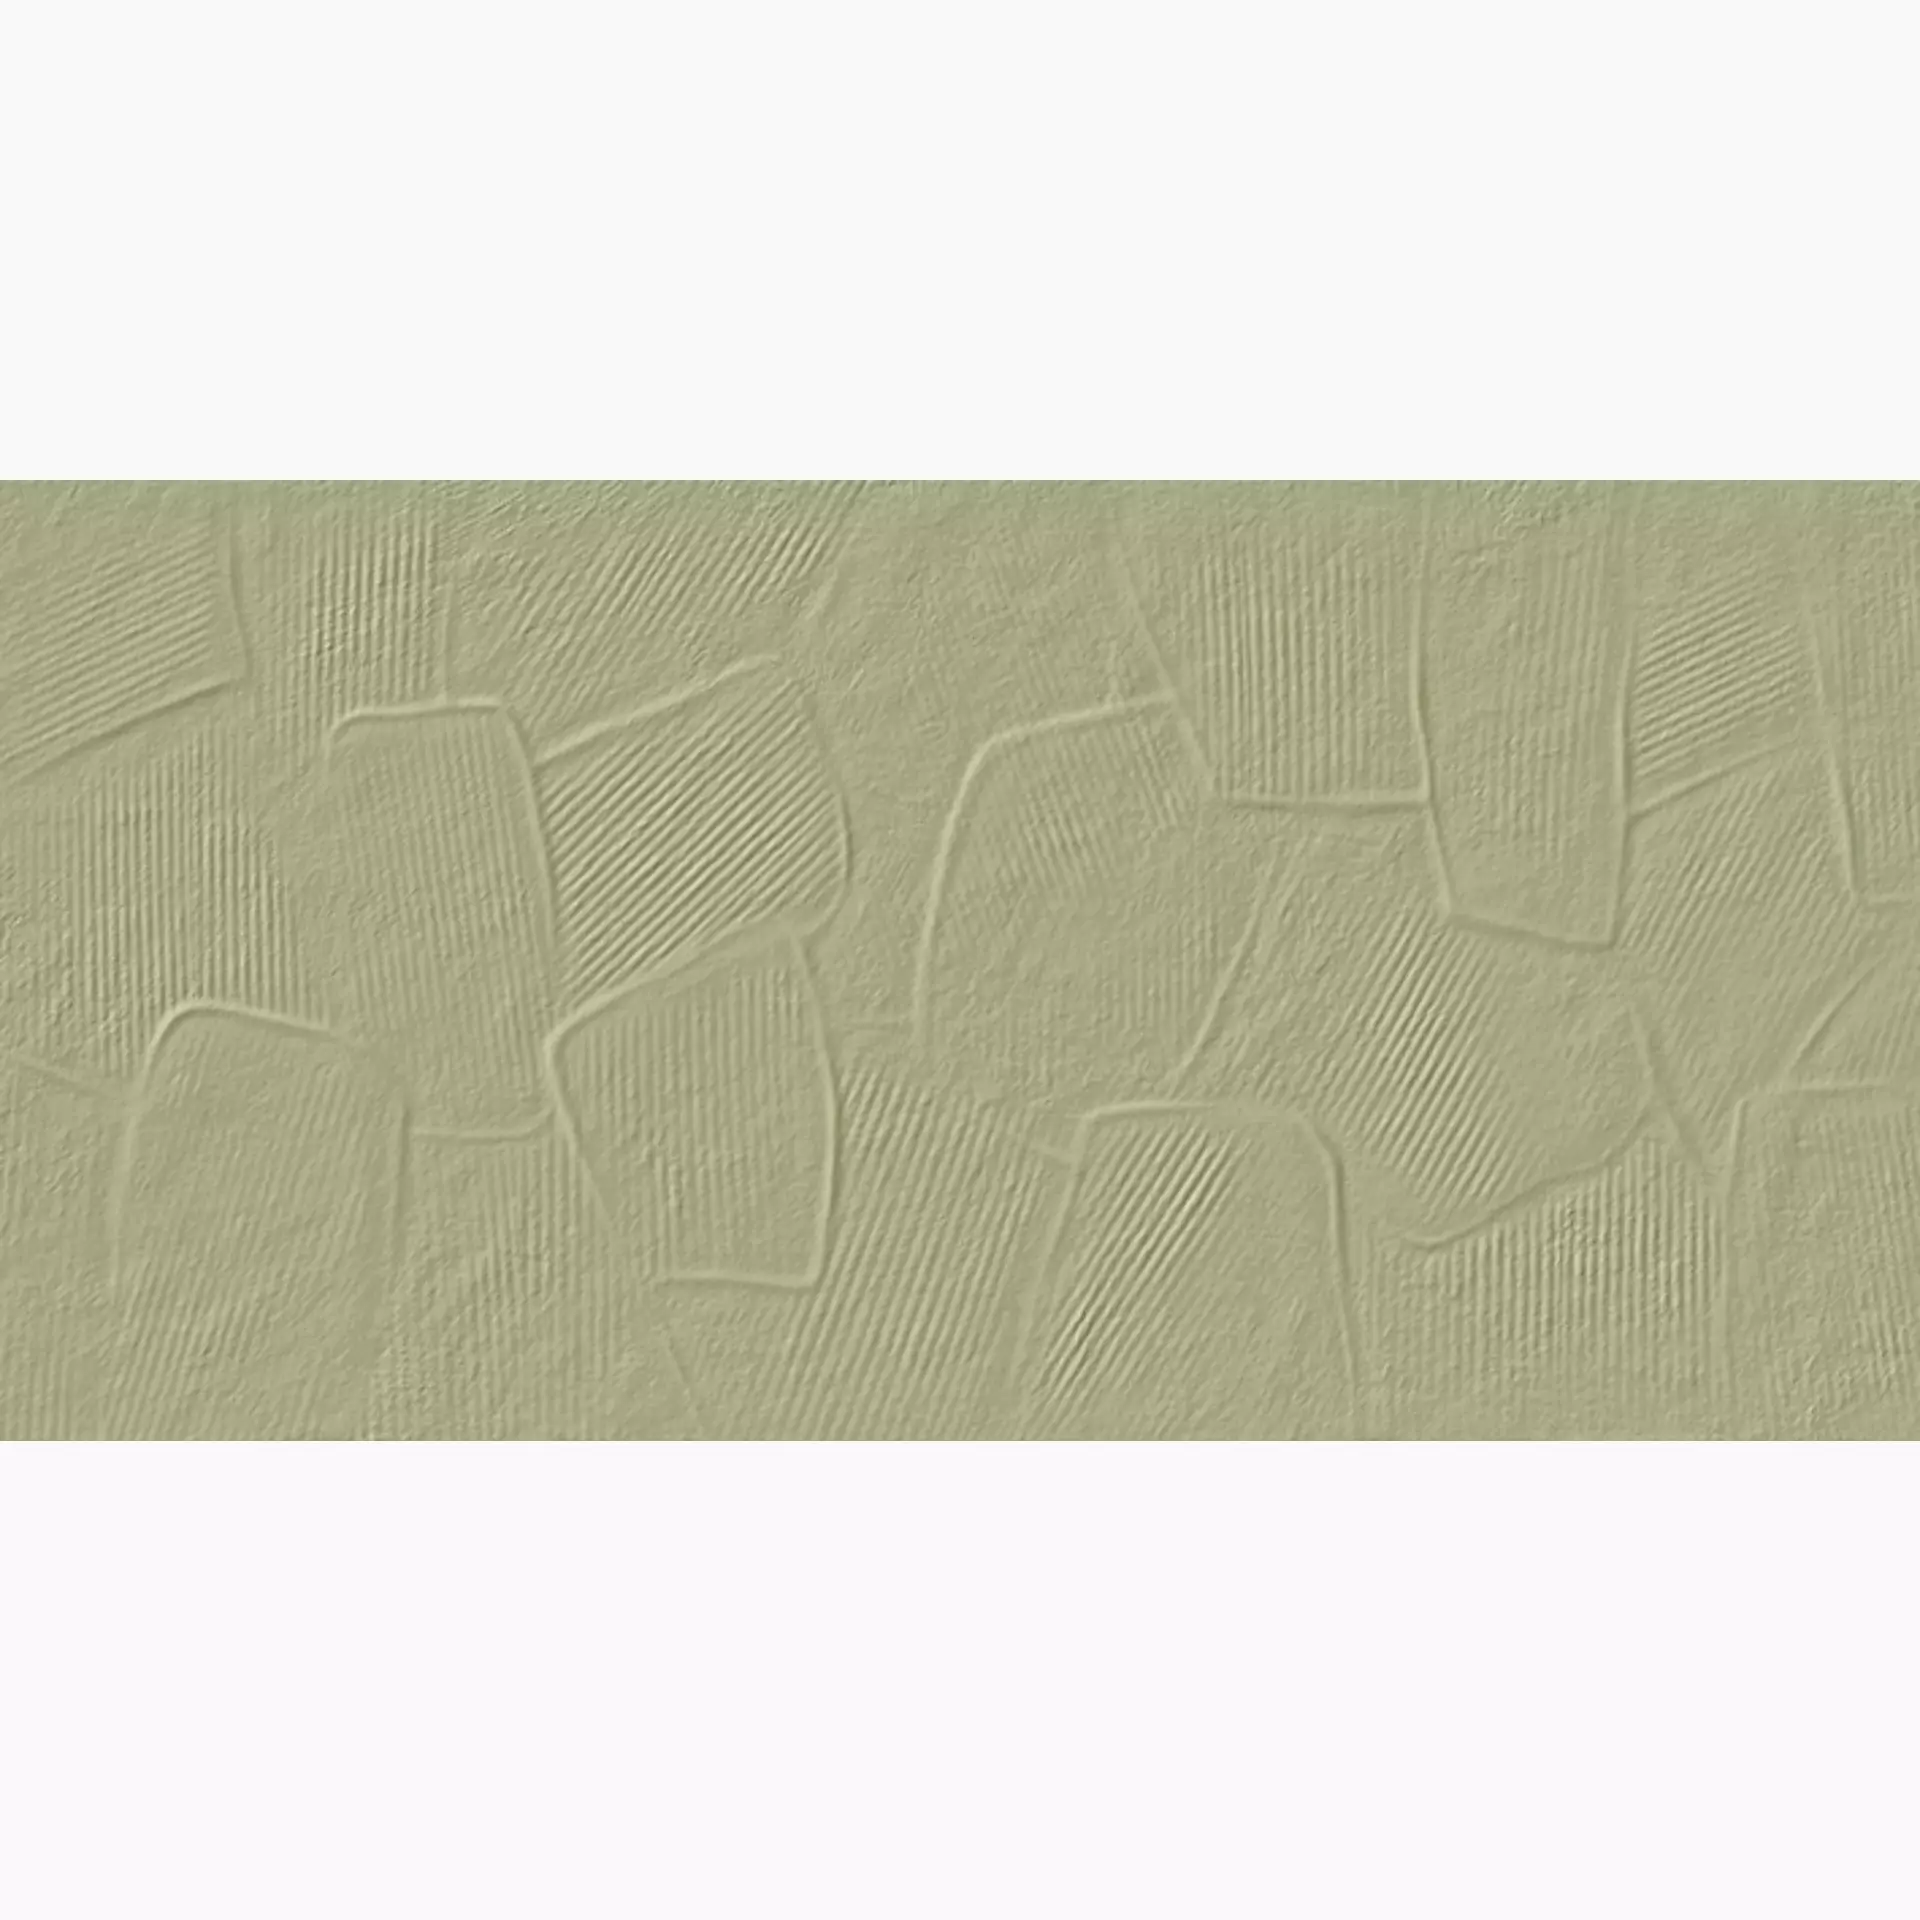 Villeroy & Boch Soft Colours Jade Green Matt Decor 1583-DS50 30x60cm rectified 9mm